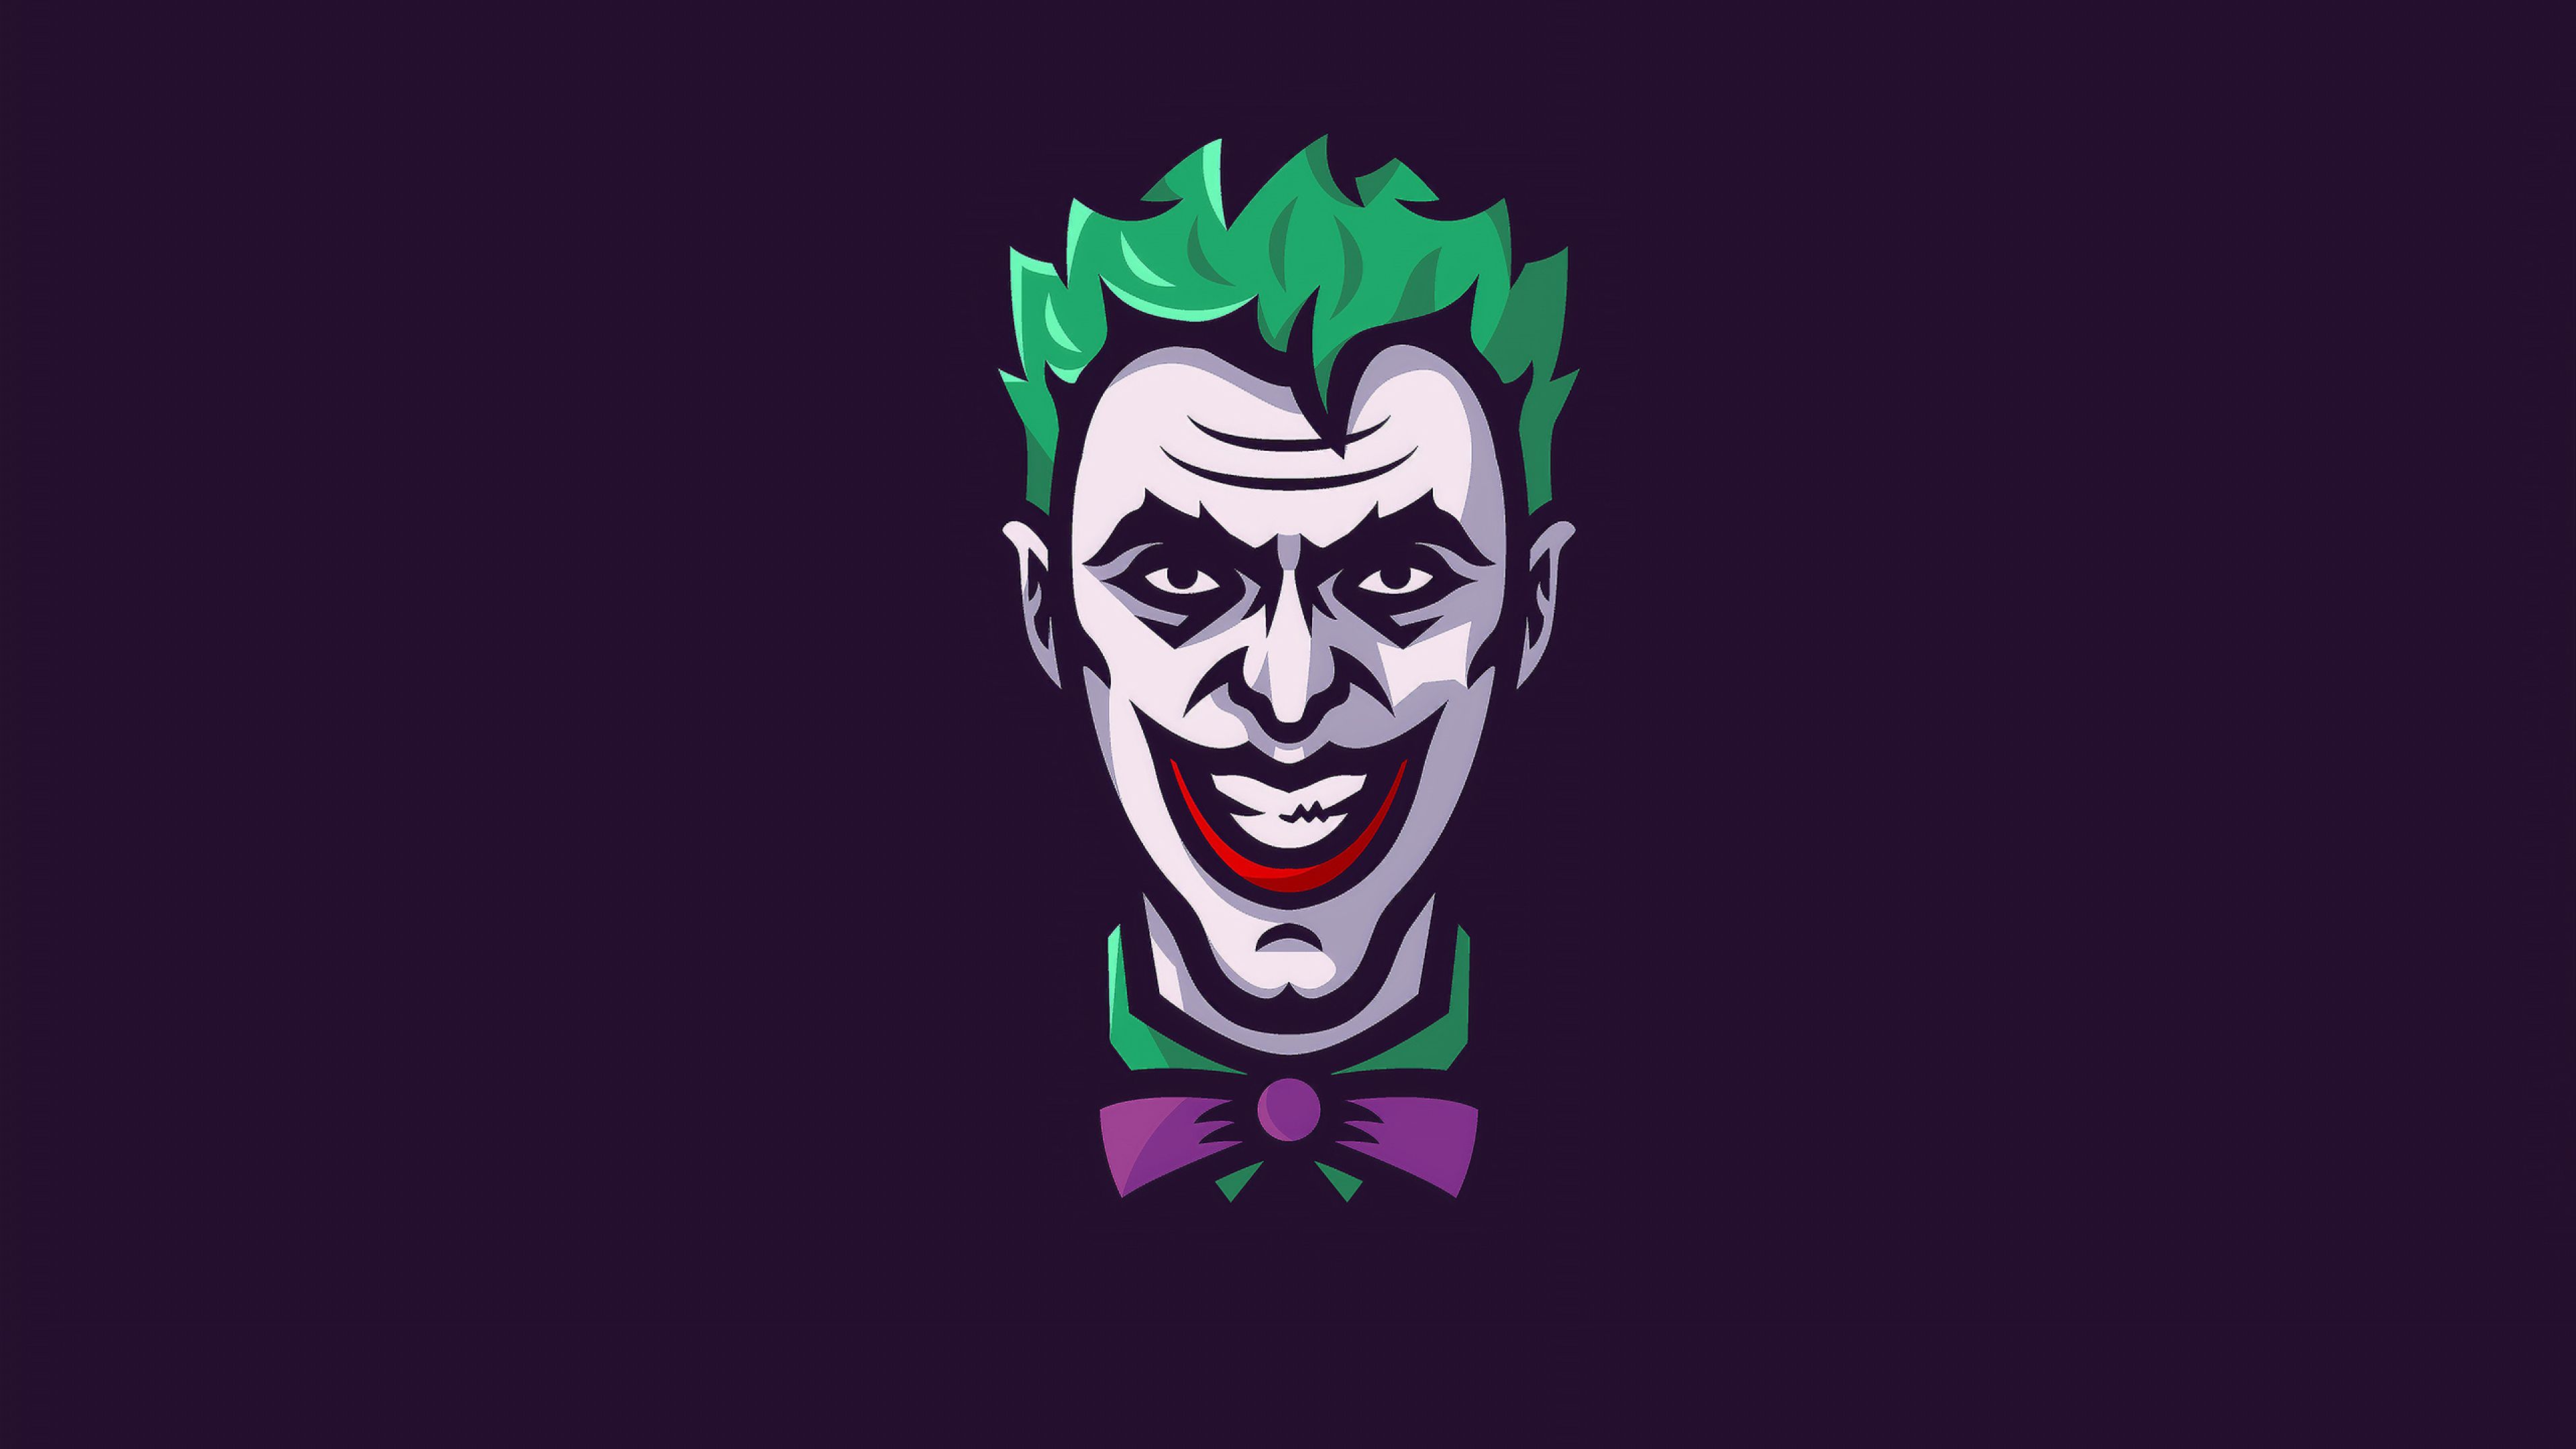 Minimal Joker Art 4K Wallpaper, HD Minimalist 4K